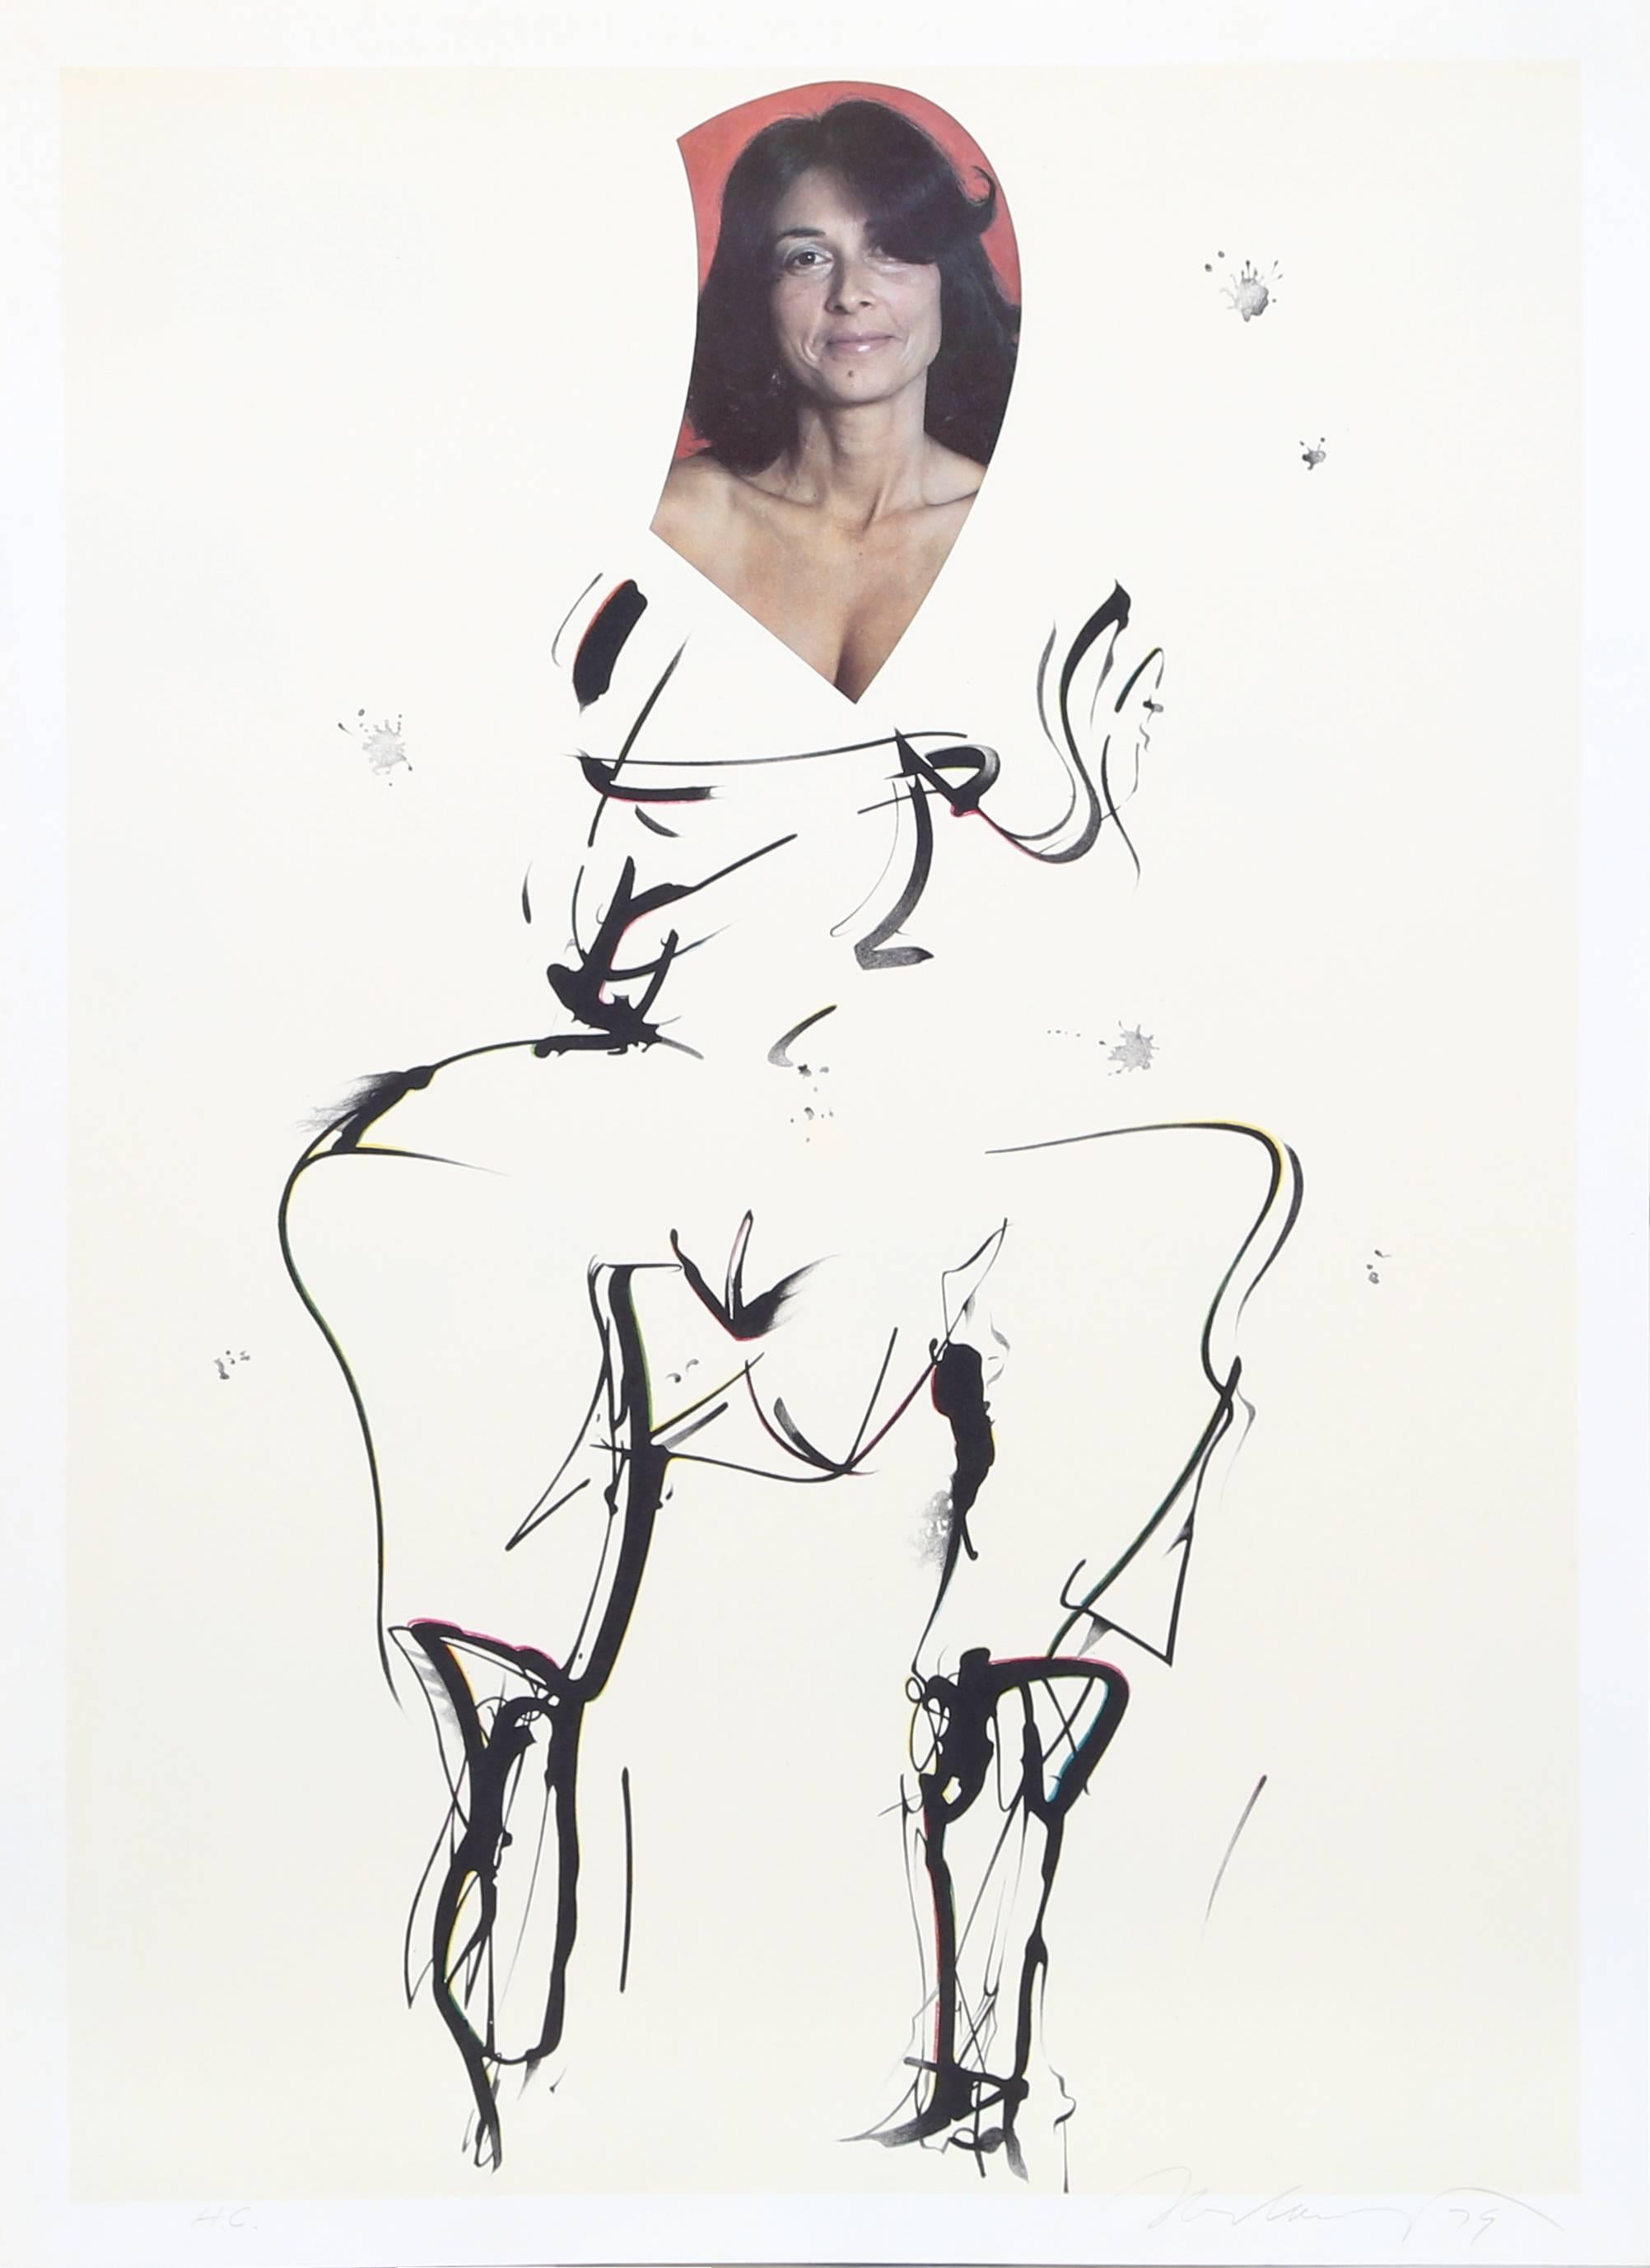 Künstler: Mel Ramos (Amerikaner, geb. 1935)
Titel: I Still Get a Thrill When I See Bill III
Jahr: 1979
Medium: Lithographie, mit Bleistift signiert
Auflage: 175, HC
Bildgröße: 26,5 x 18,5 Zoll 
Größe: 28,5  x 20.5 in. (72.39  x 52.07 cm)